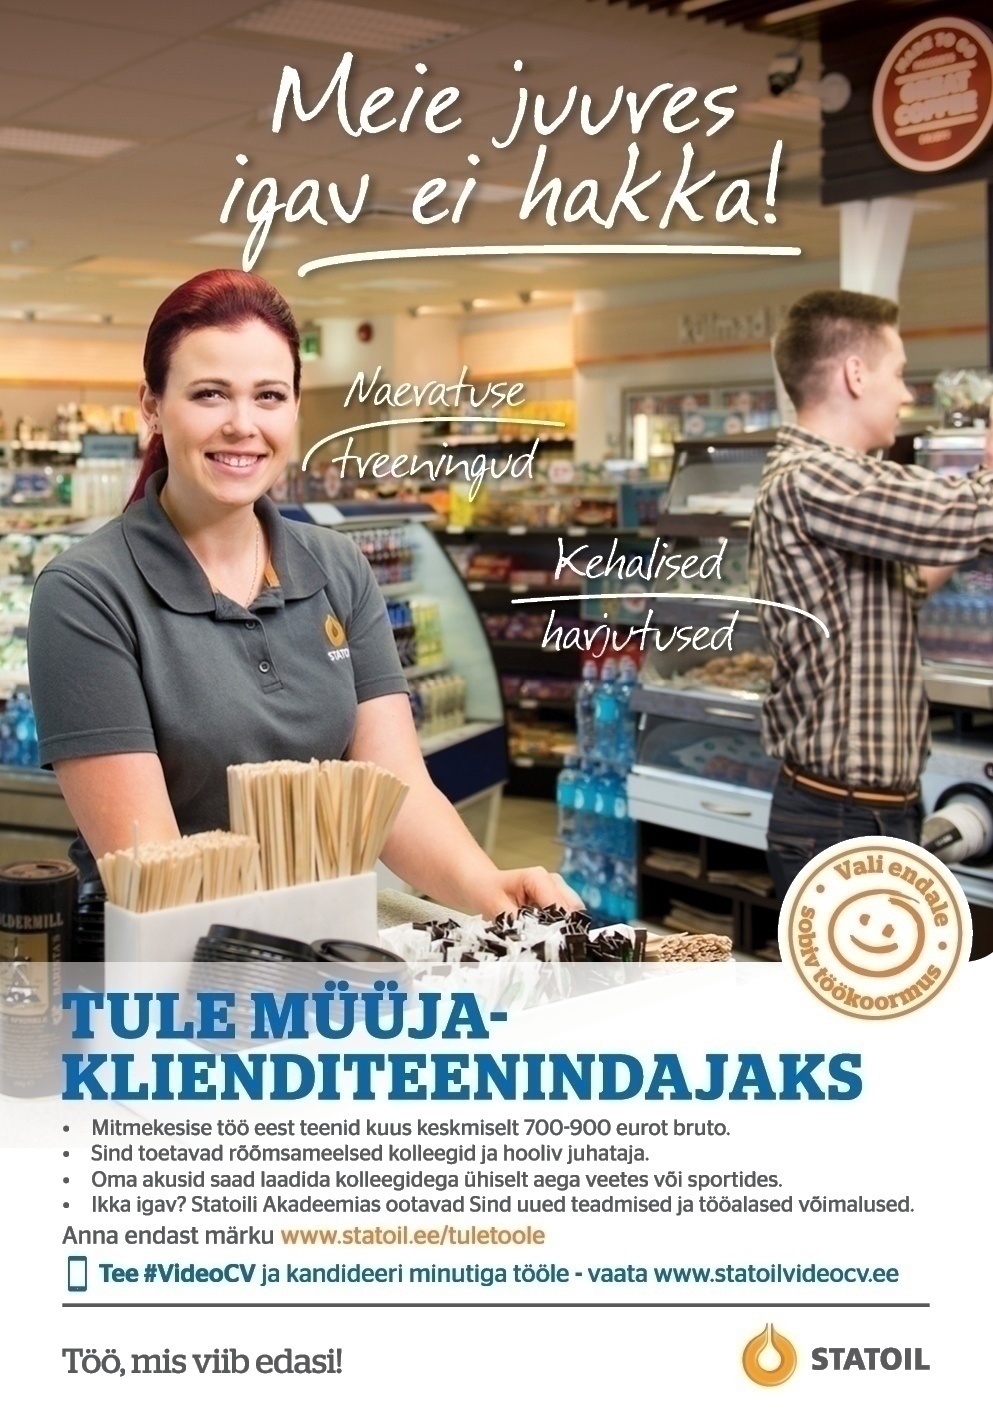 Circle K Eesti AS Müüja-klienditeenindaja Adavere teenindusjaama